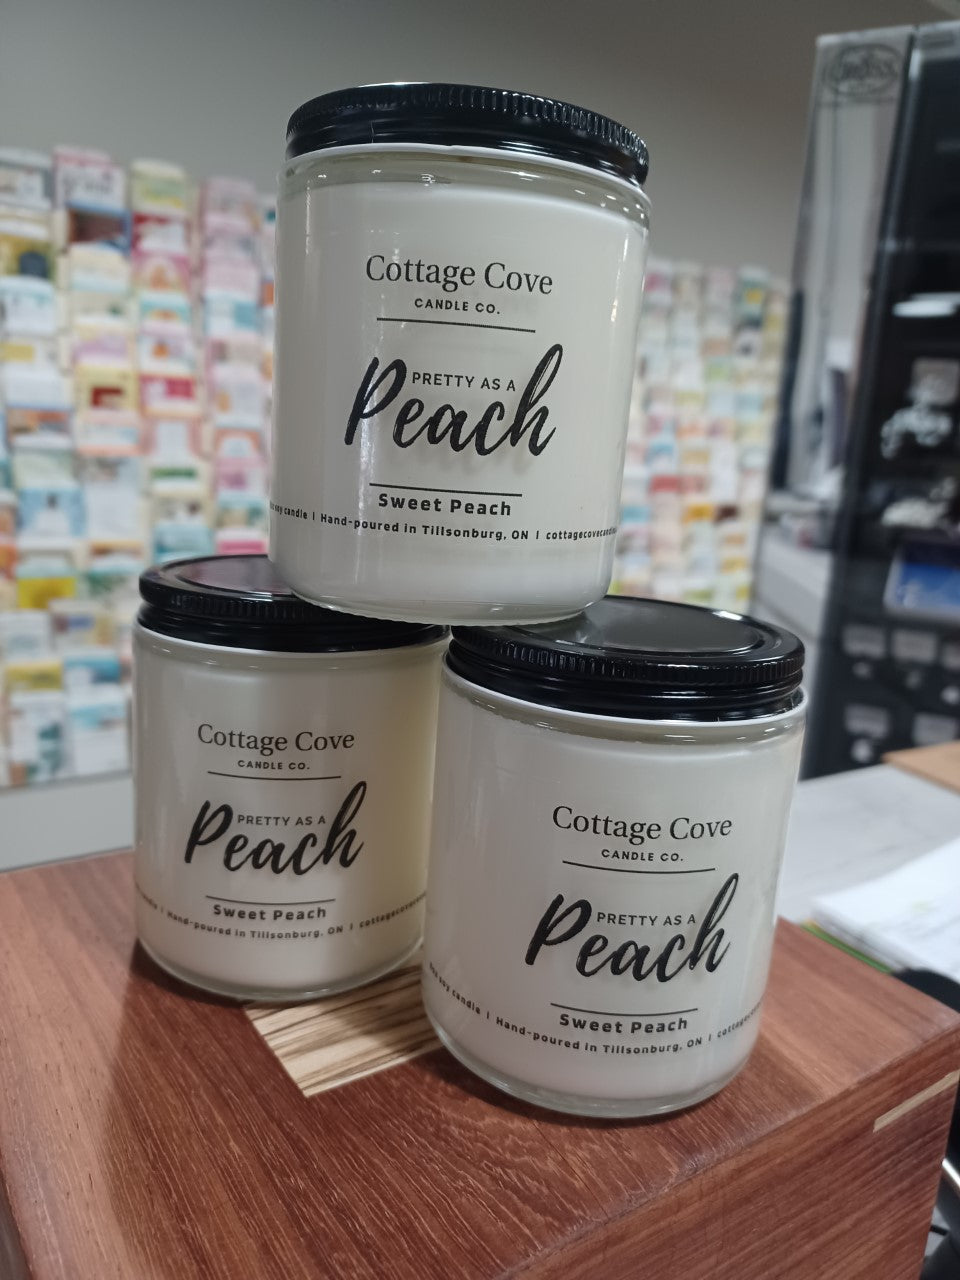 Cottage Cove Candles - Pretty as a Peach - Sweet Peach - 8oz